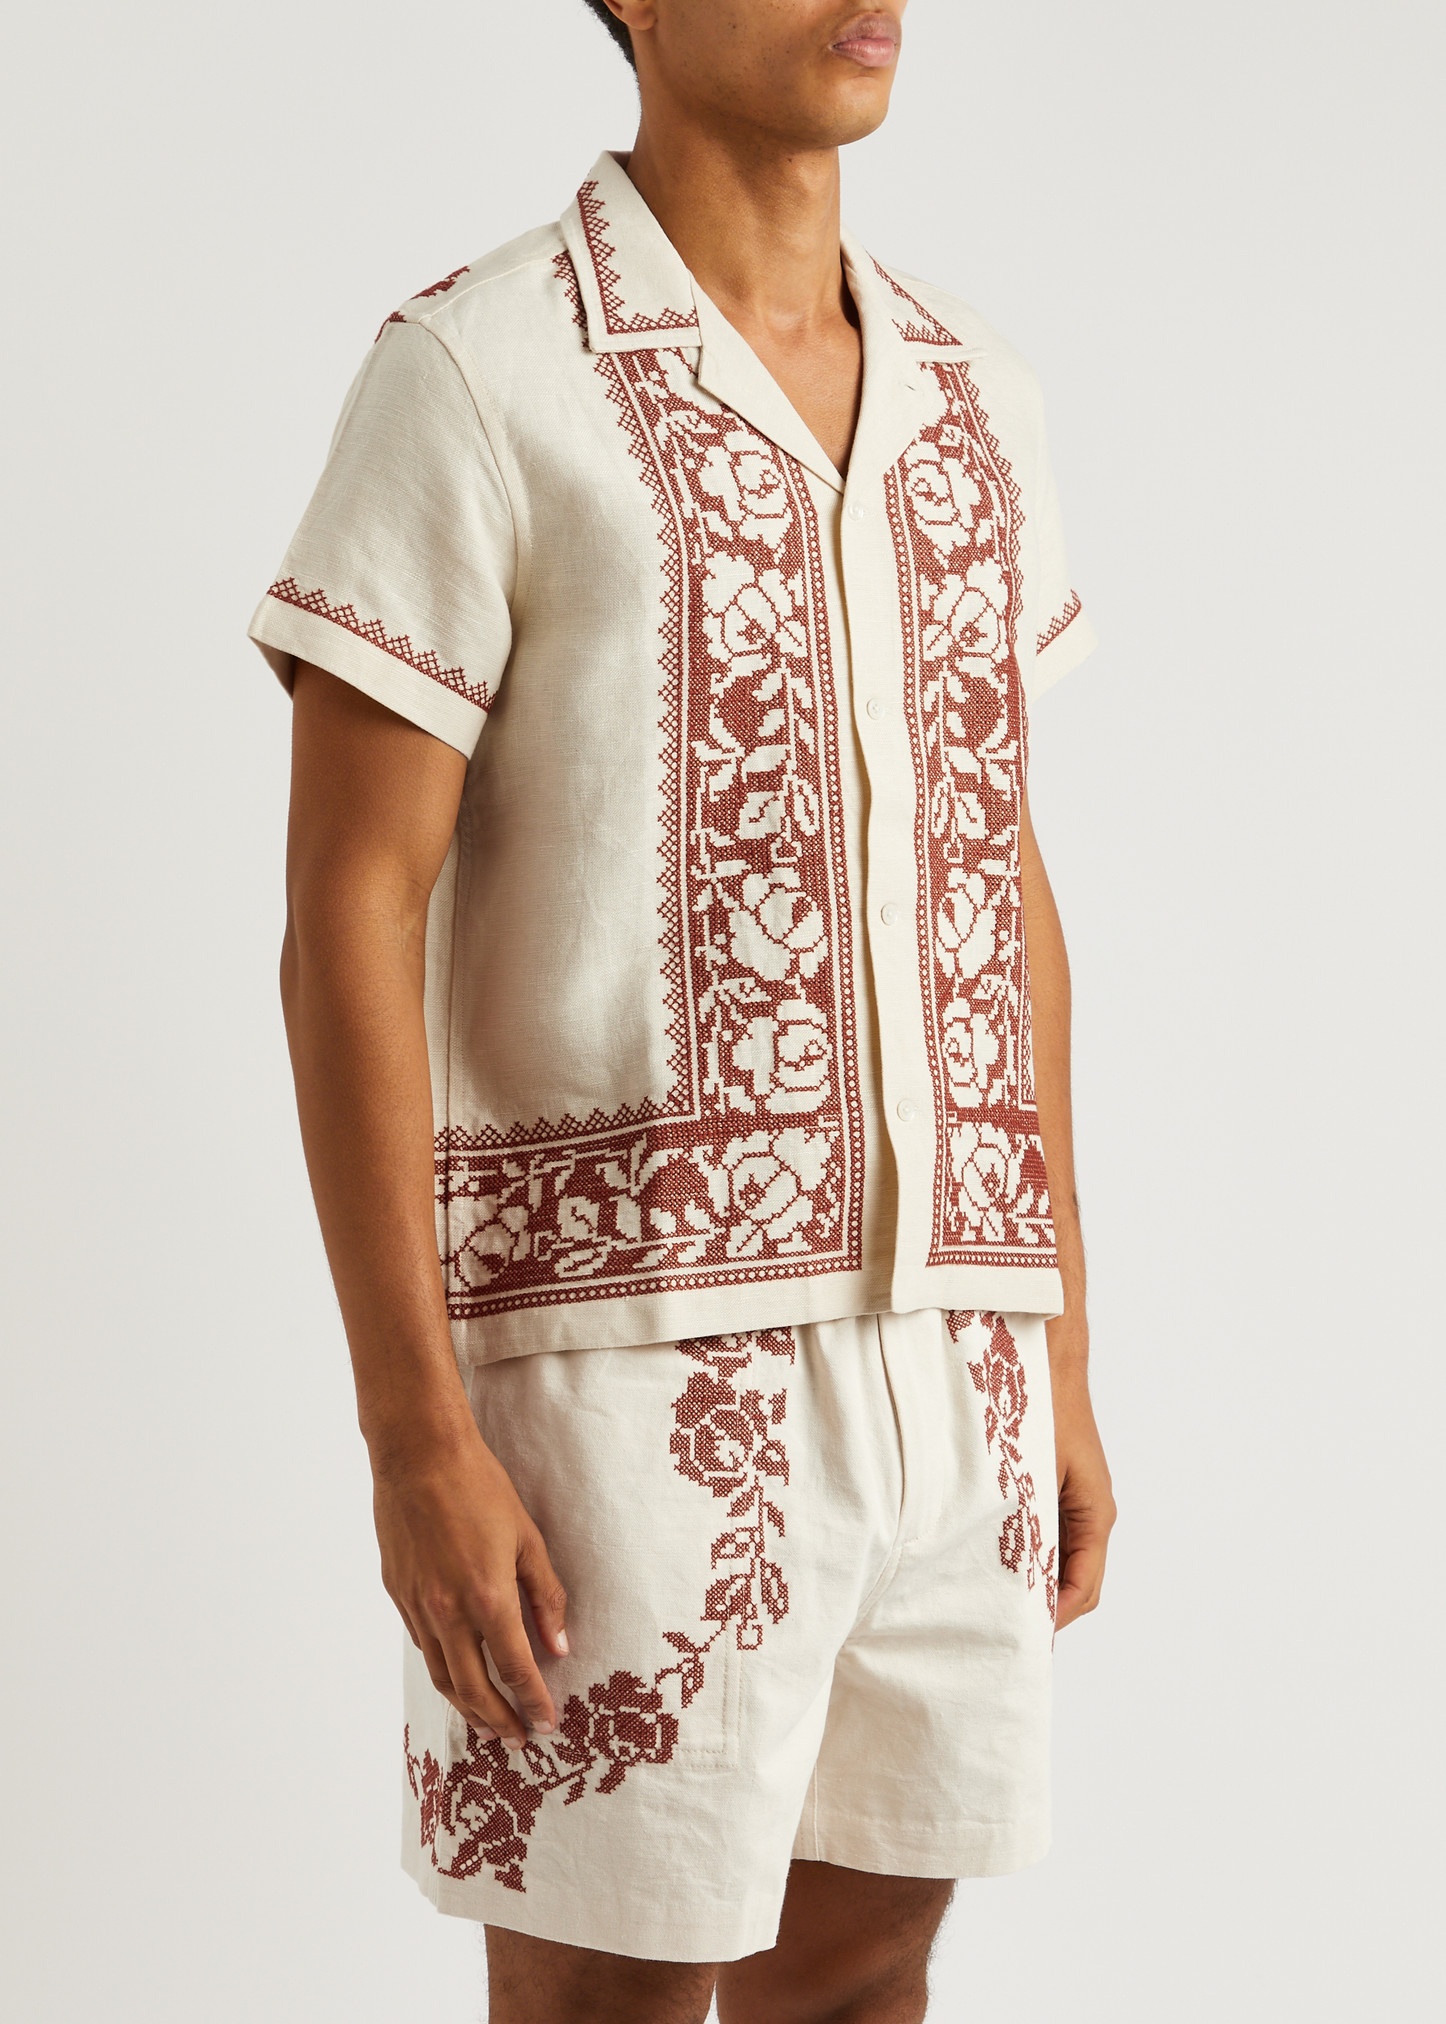 Rose Garland cross-stitched linen shirt - 2